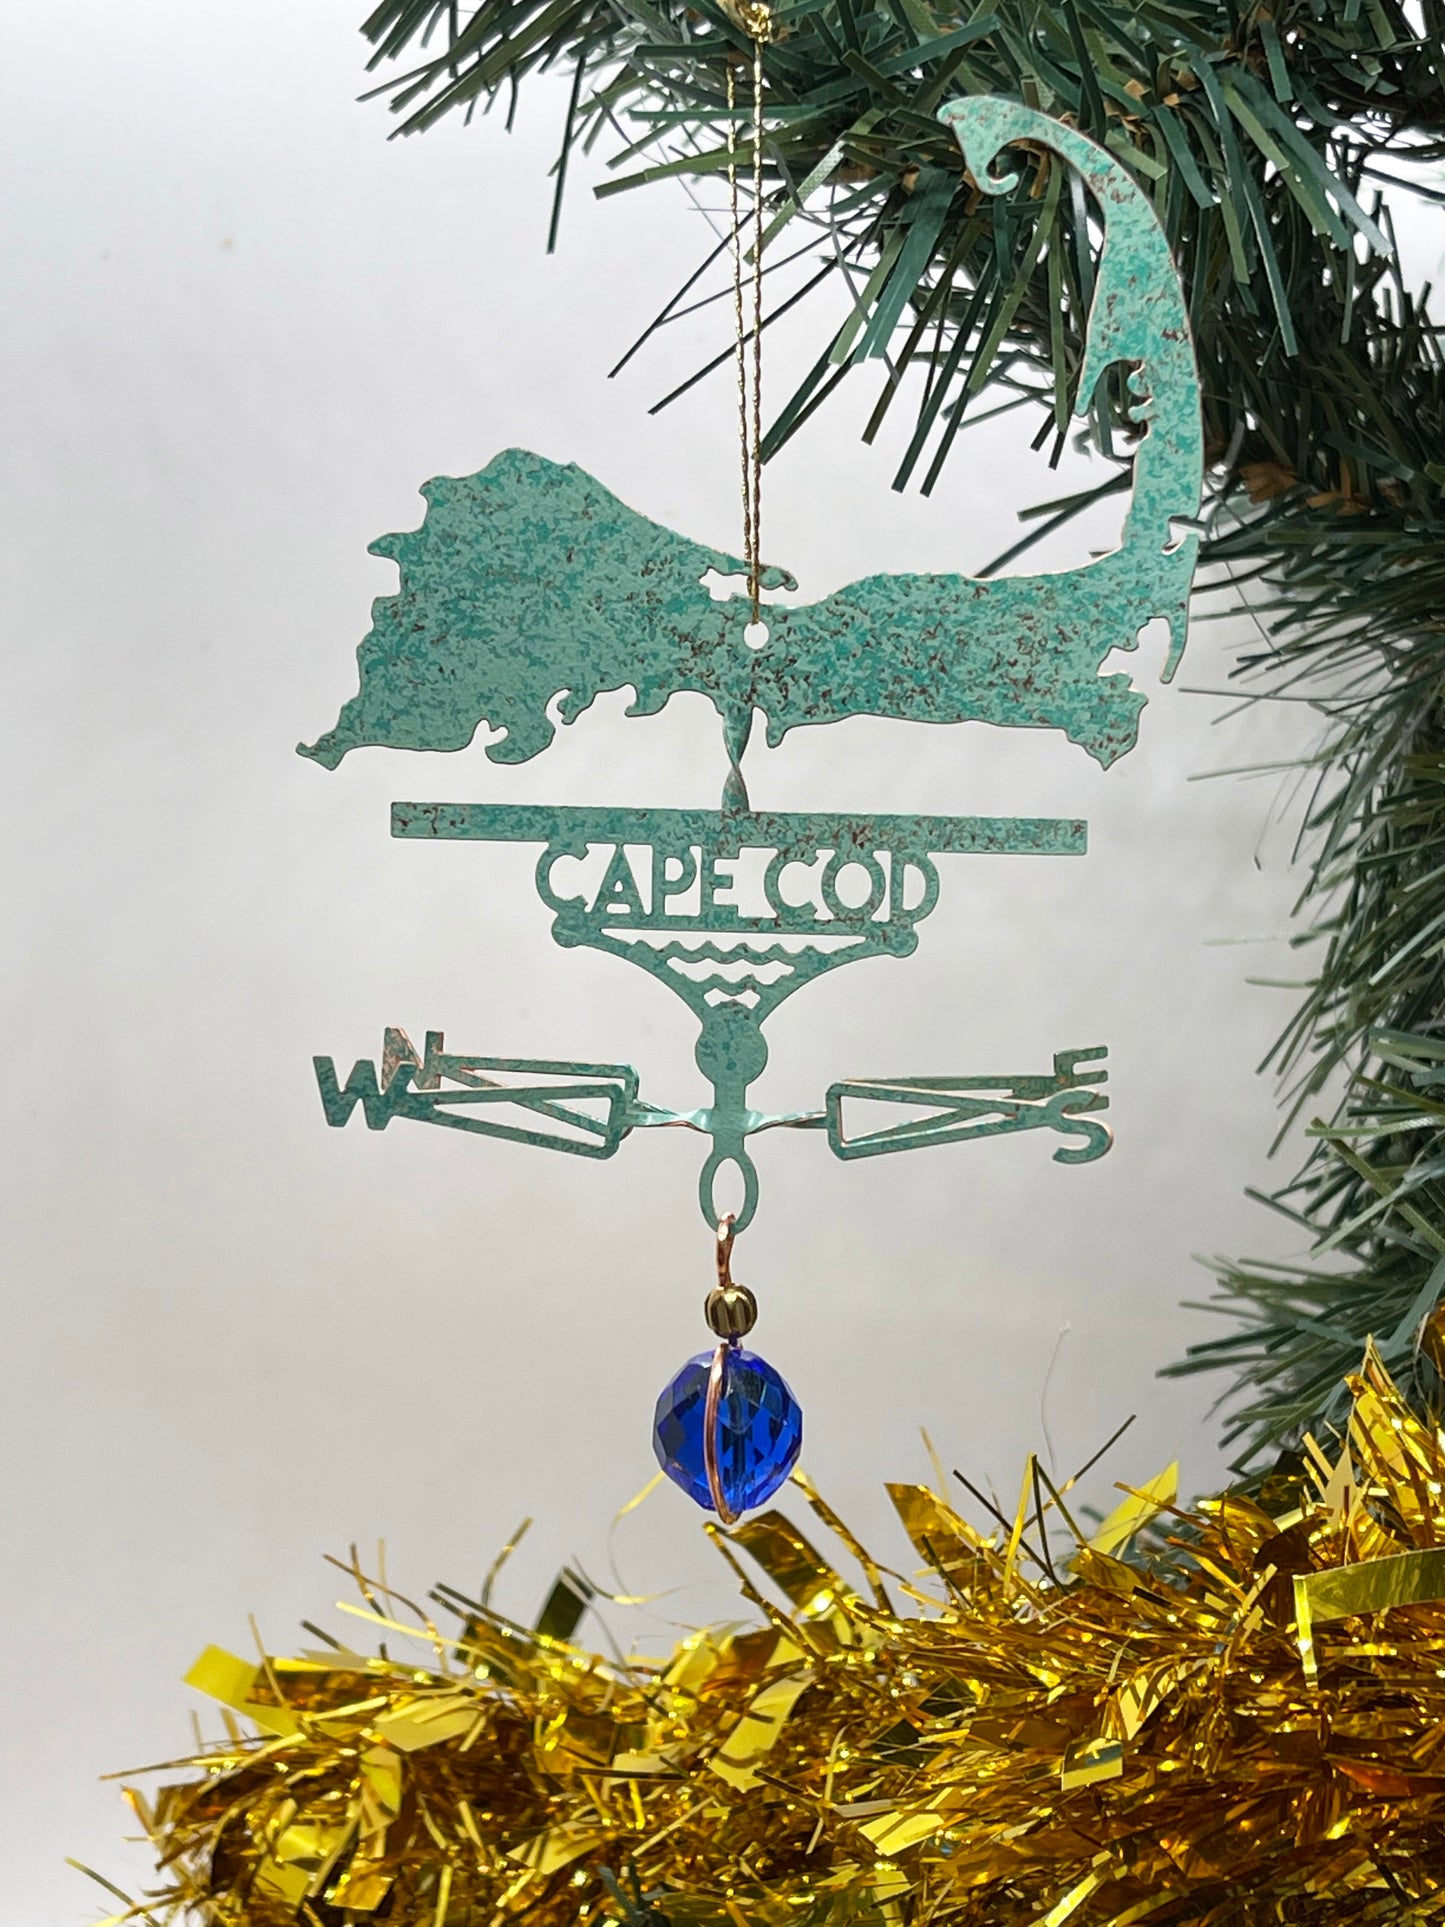 Cape Cod Silhouette Weathervane Ornament